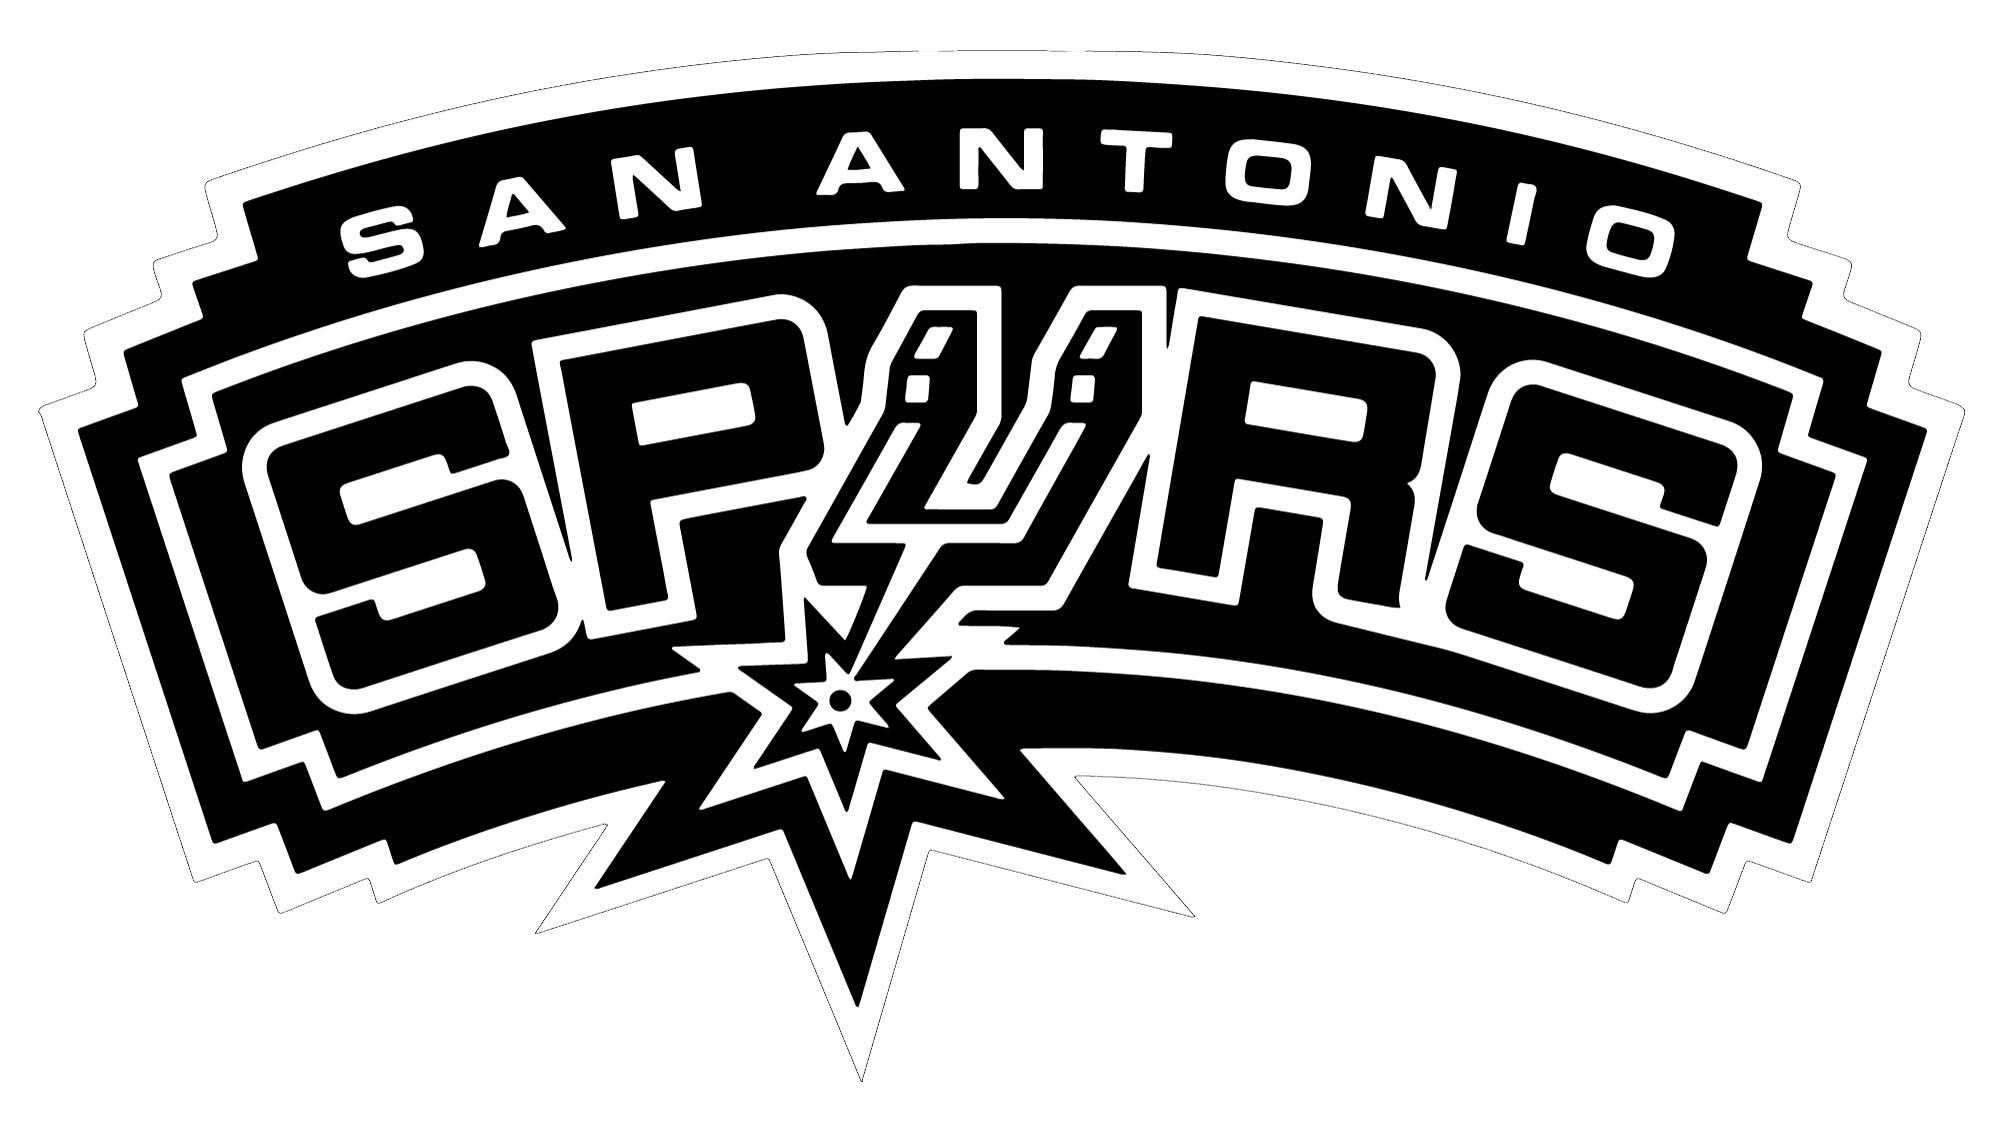 San Antonio Spurs 2015 Wallpa